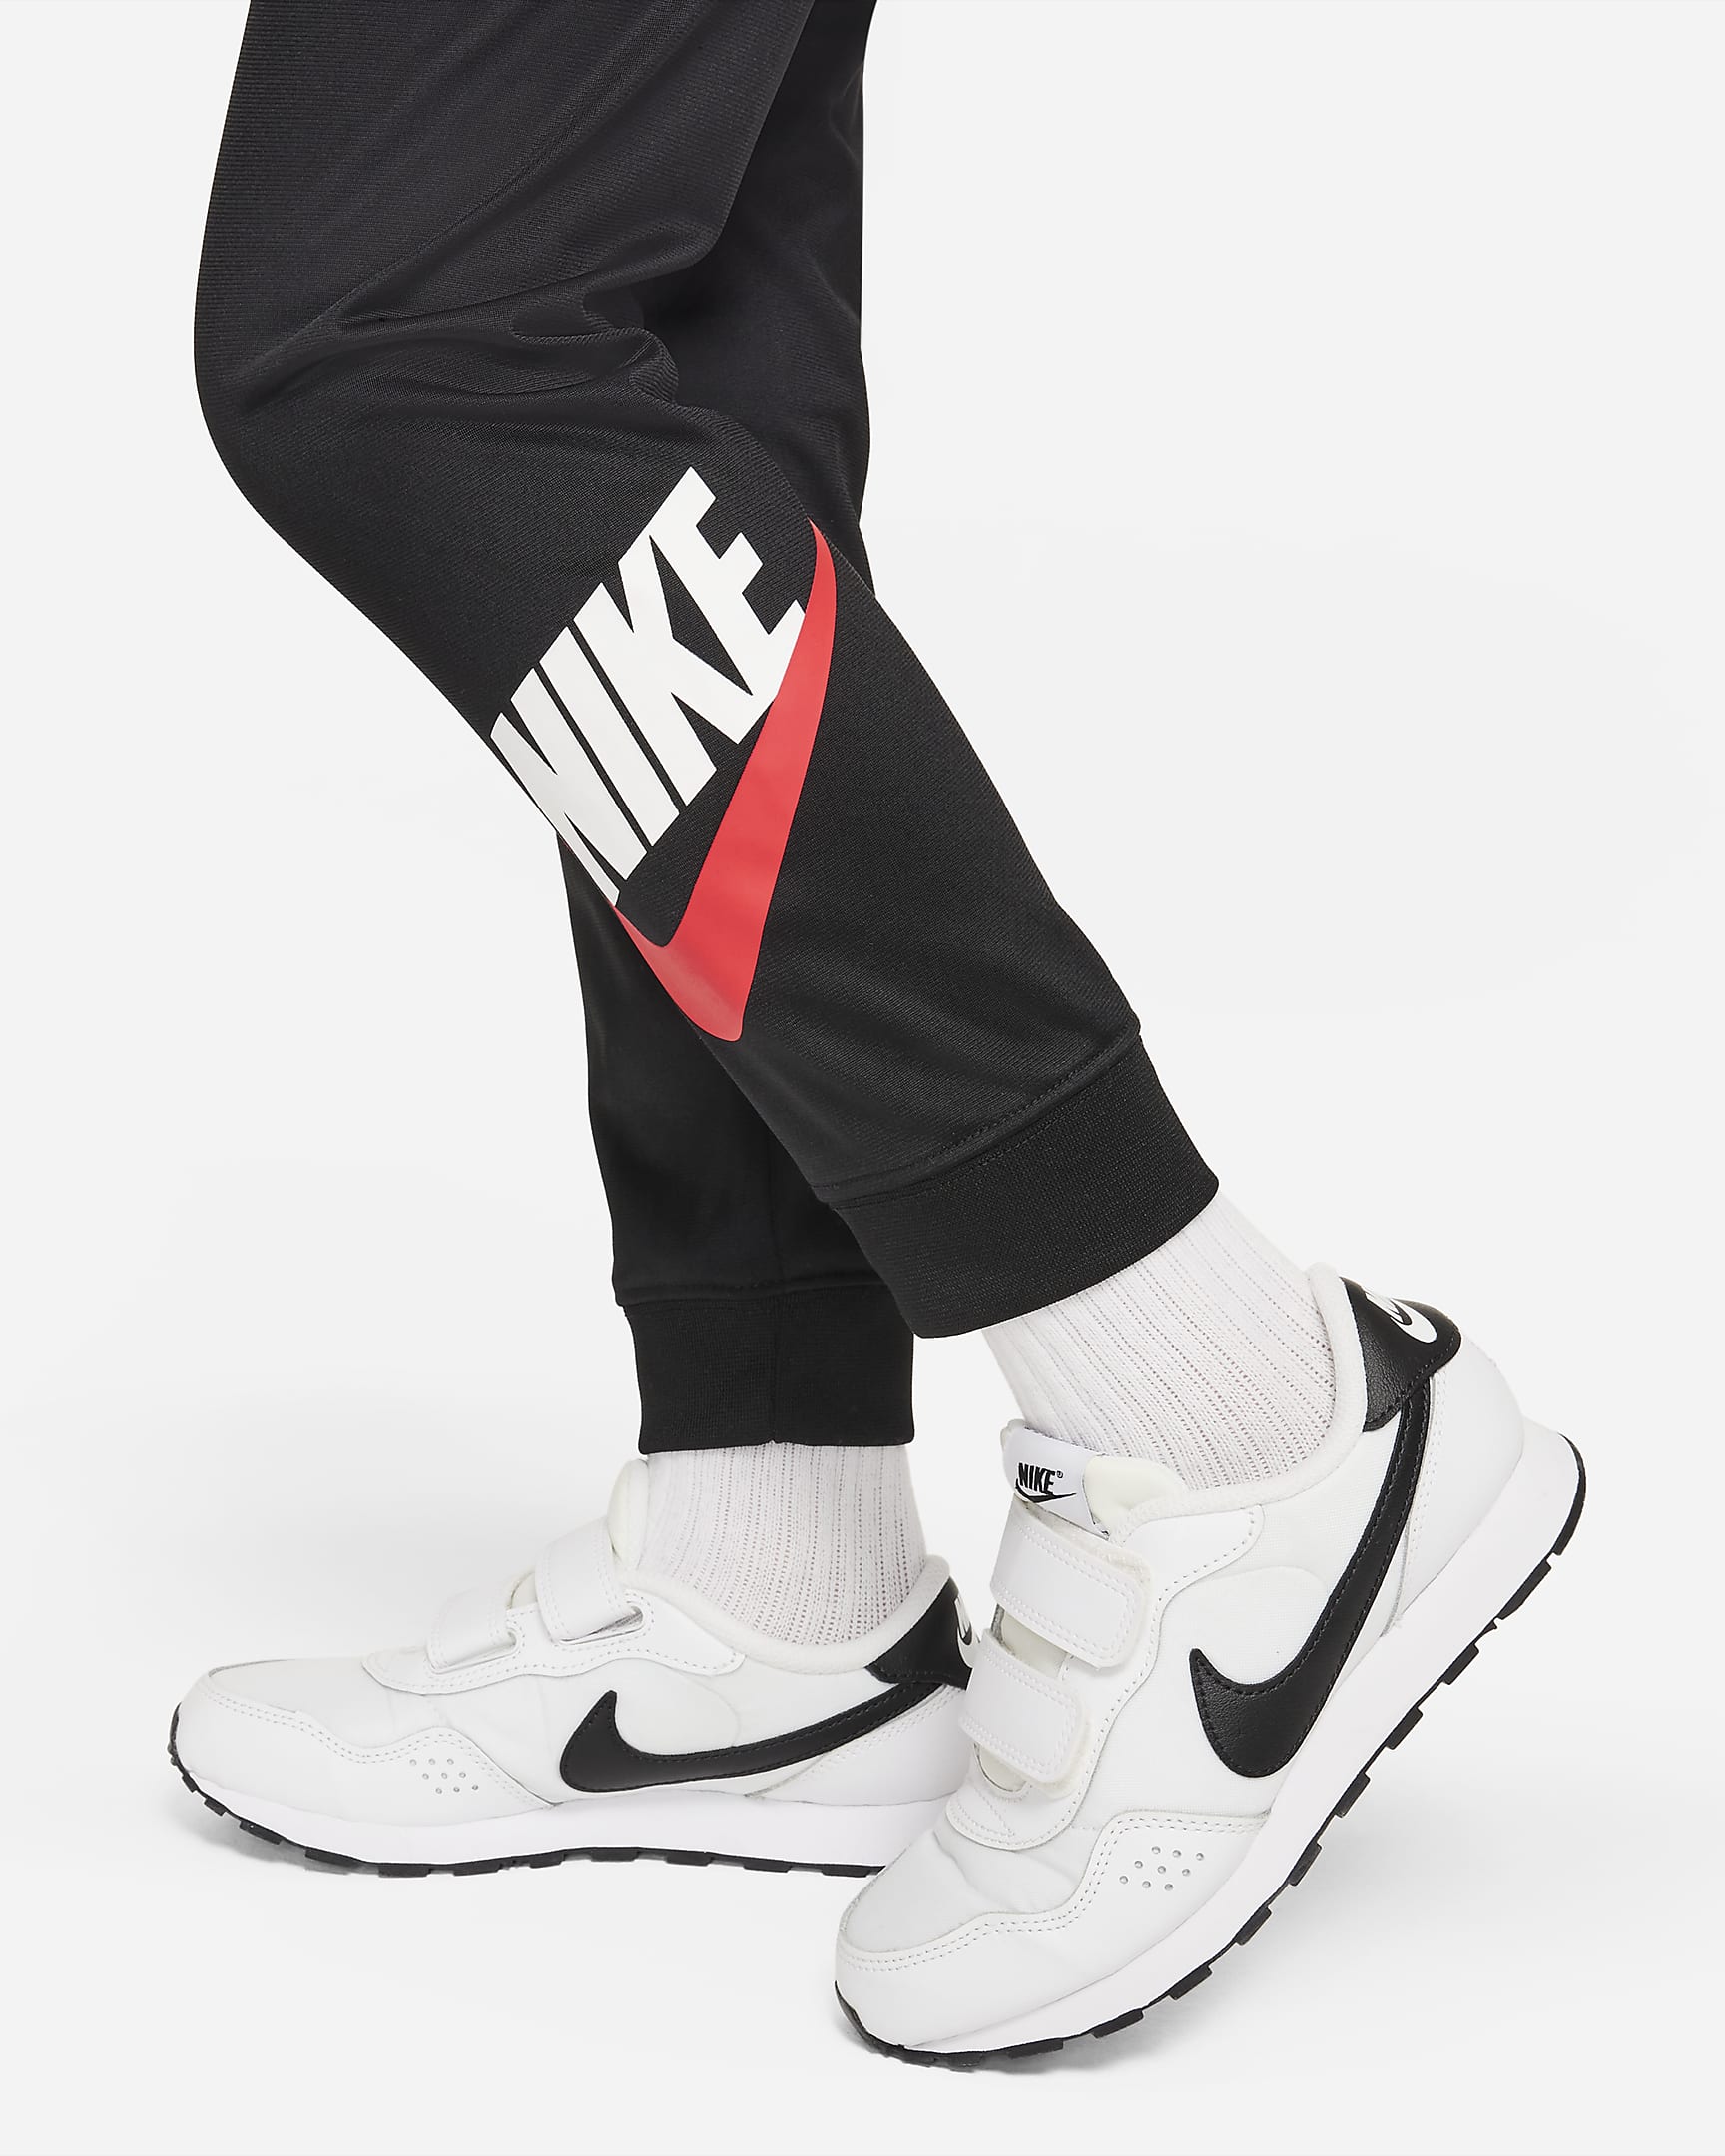 Nike Sportswear Little Kids' Tracksuit Set. Nike.com